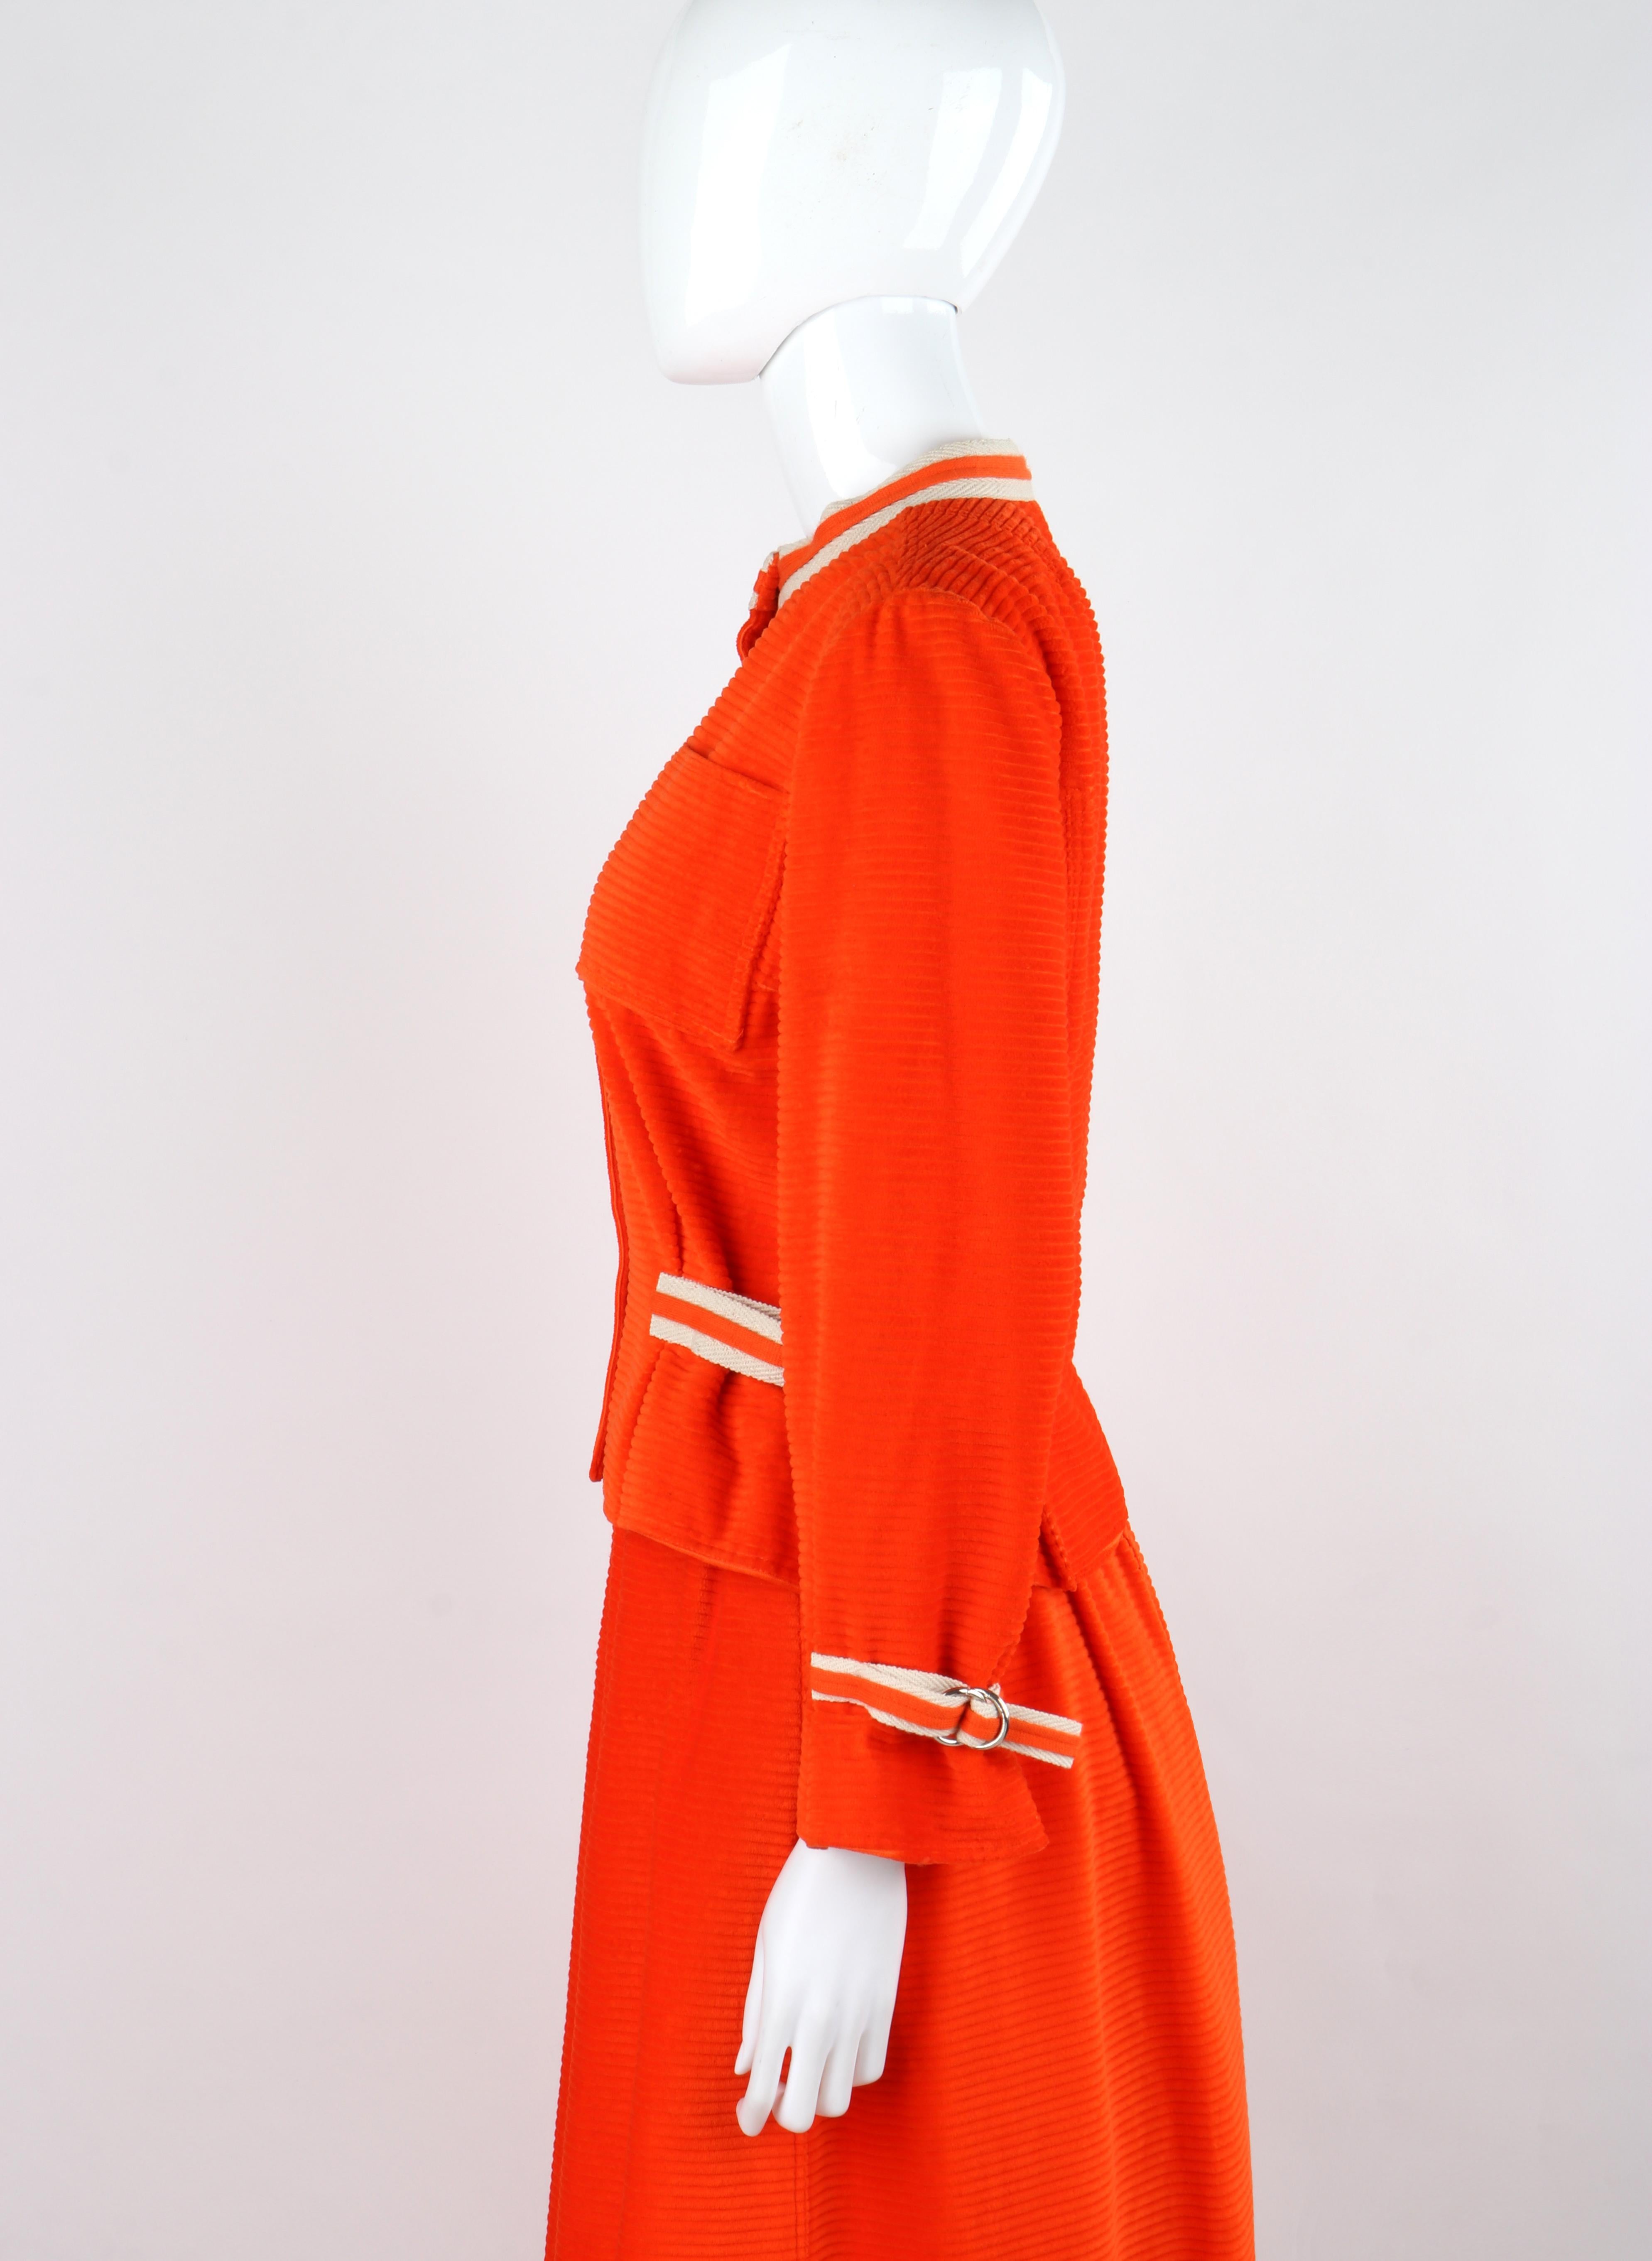 COURREGES c.1970's Orange Corduroy Button Up Jacket Blazer Skirt Suit Set w/Tags For Sale 2